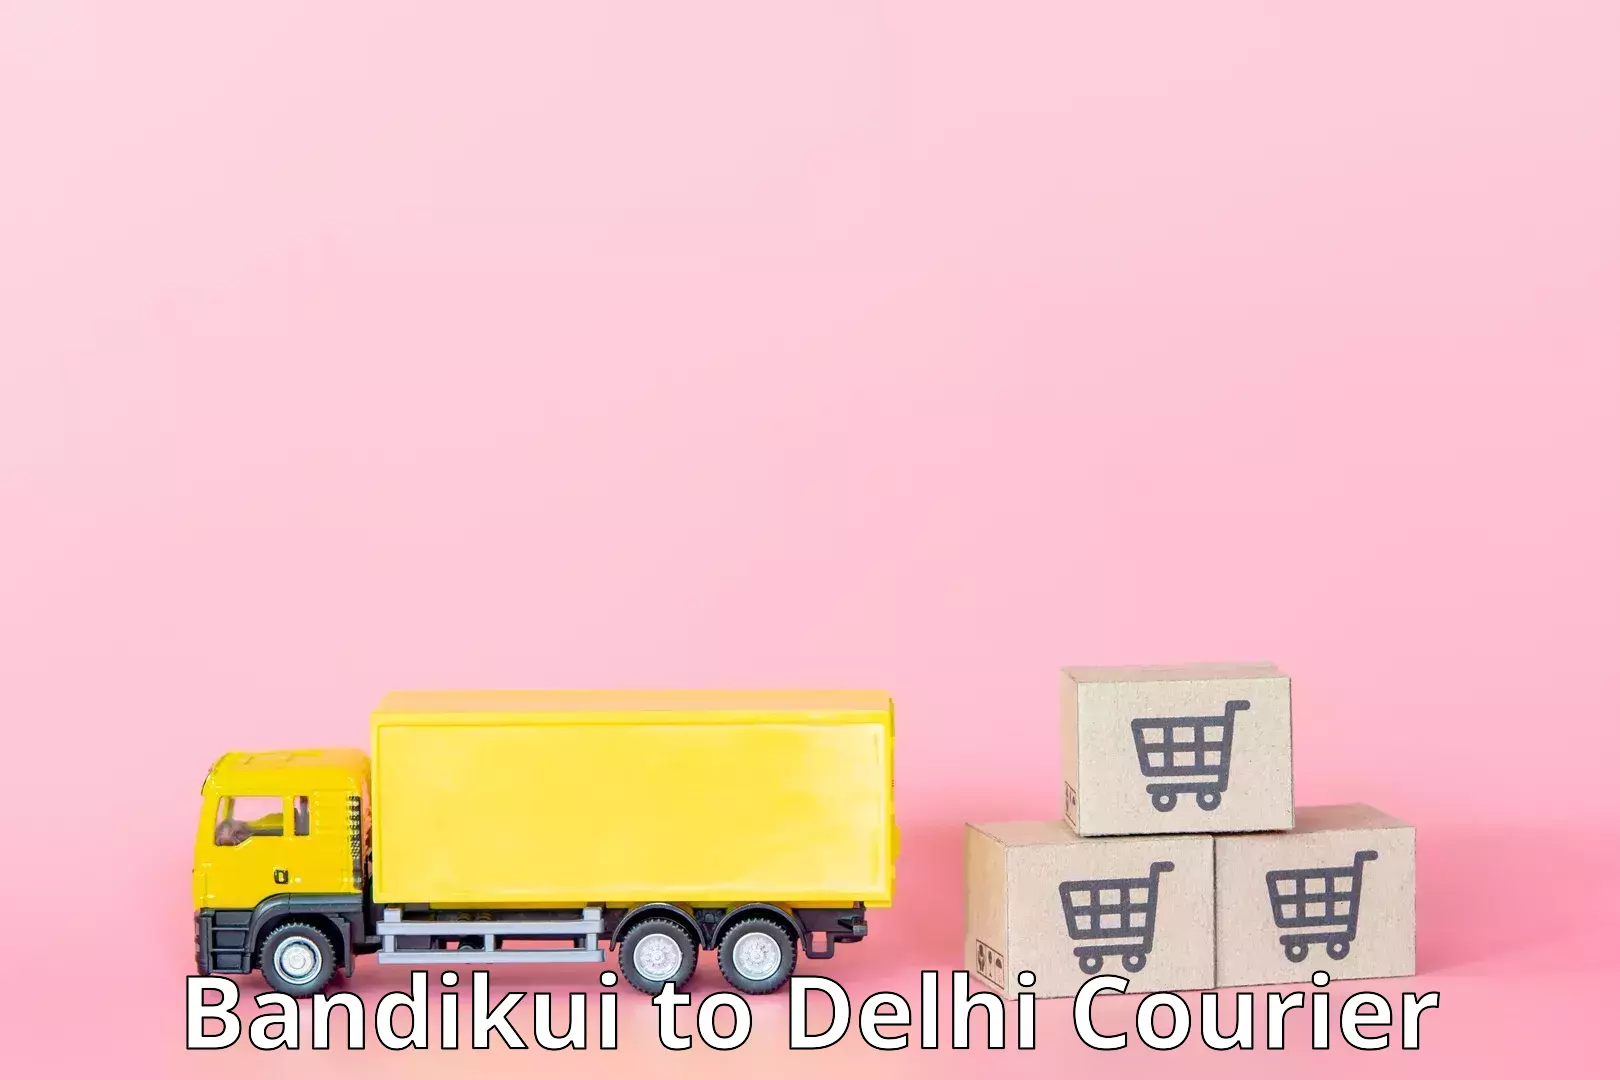 Local delivery service Bandikui to Delhi